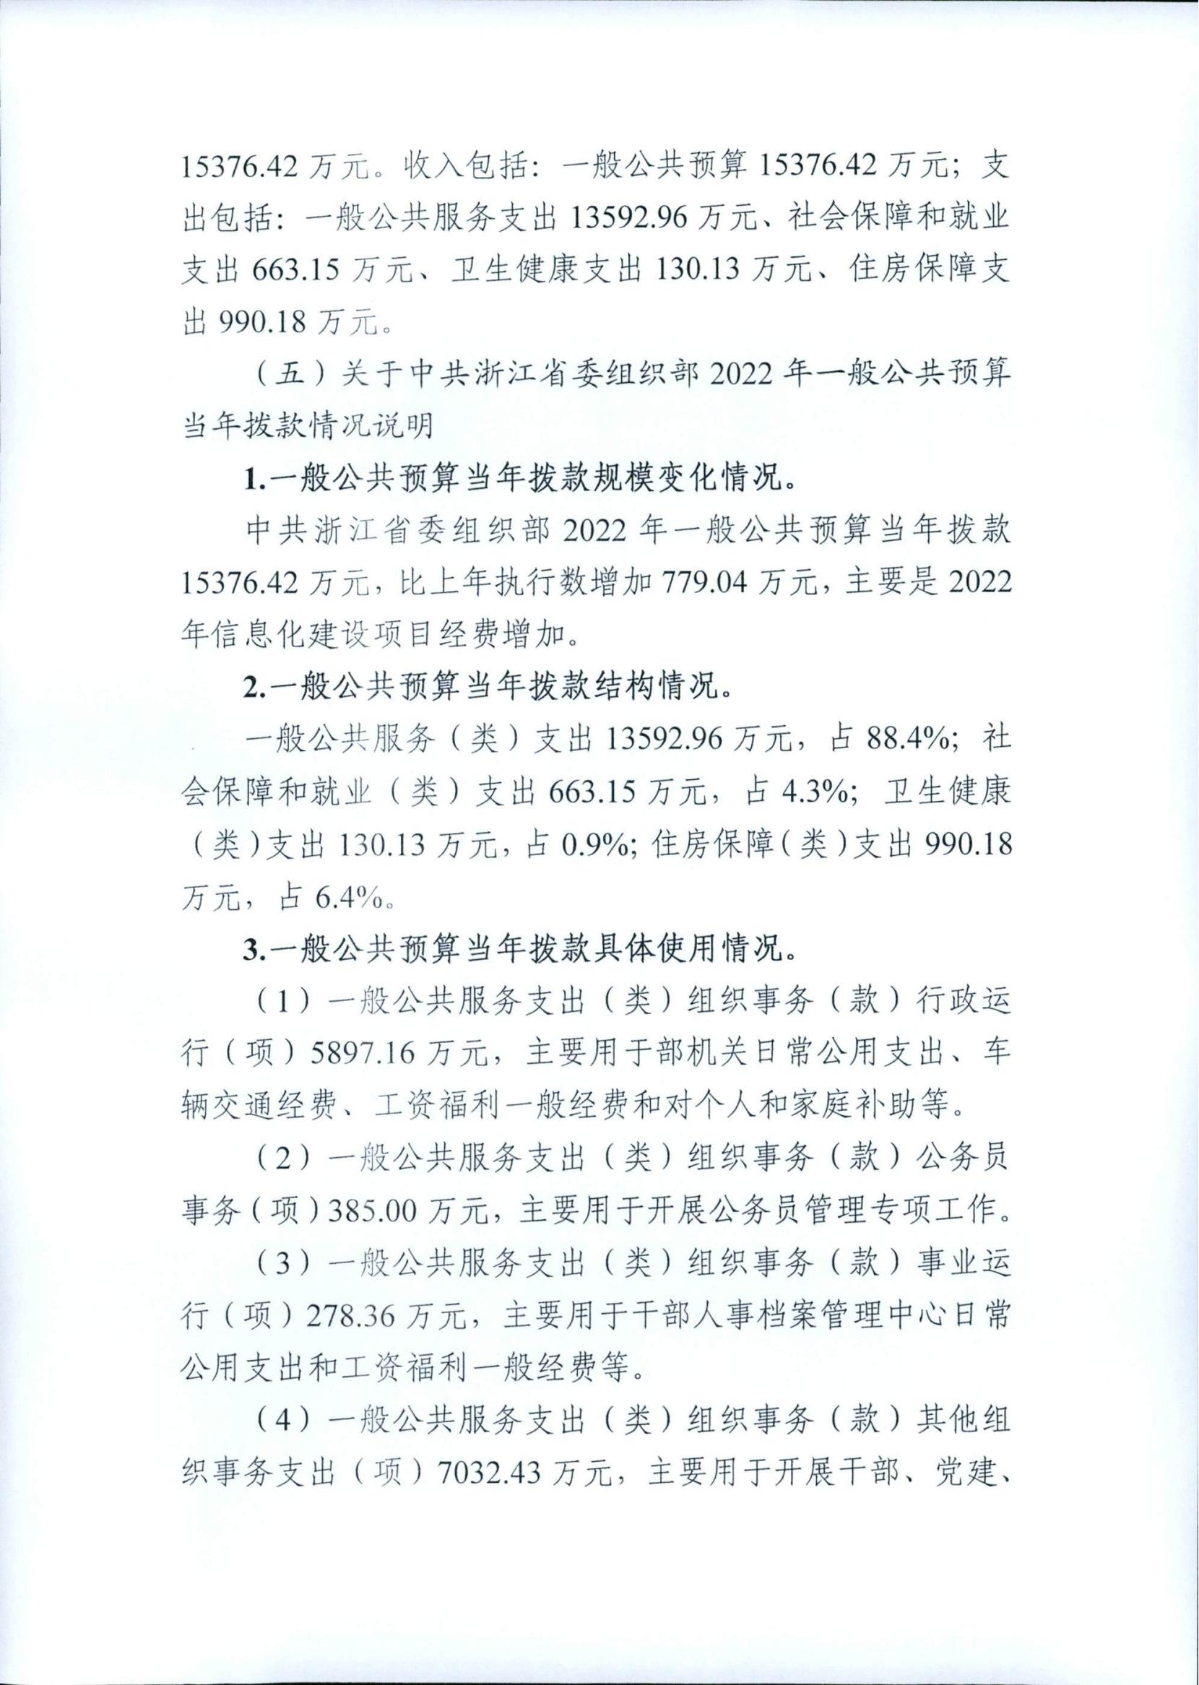 中共浙江省委组织部2022年部门预算_05.jpg